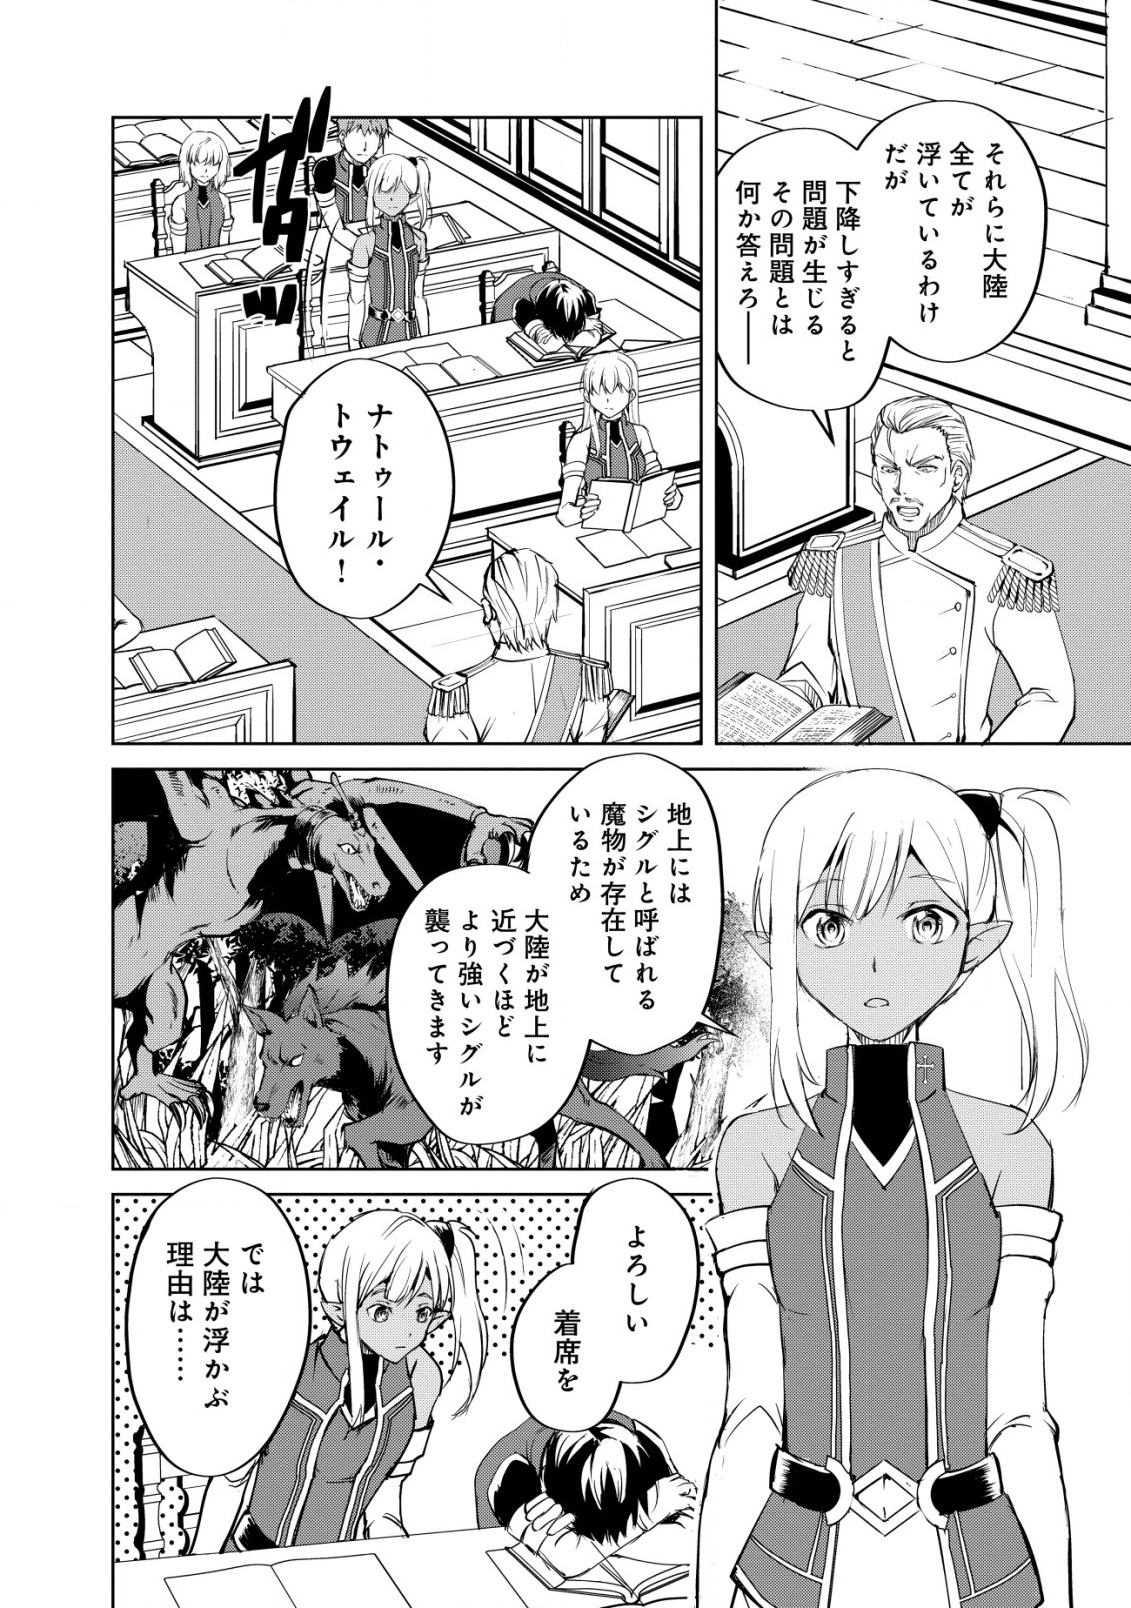 Ten to Chi to Hazama no Sekai Yelatium - Chapter 1 - Page 7